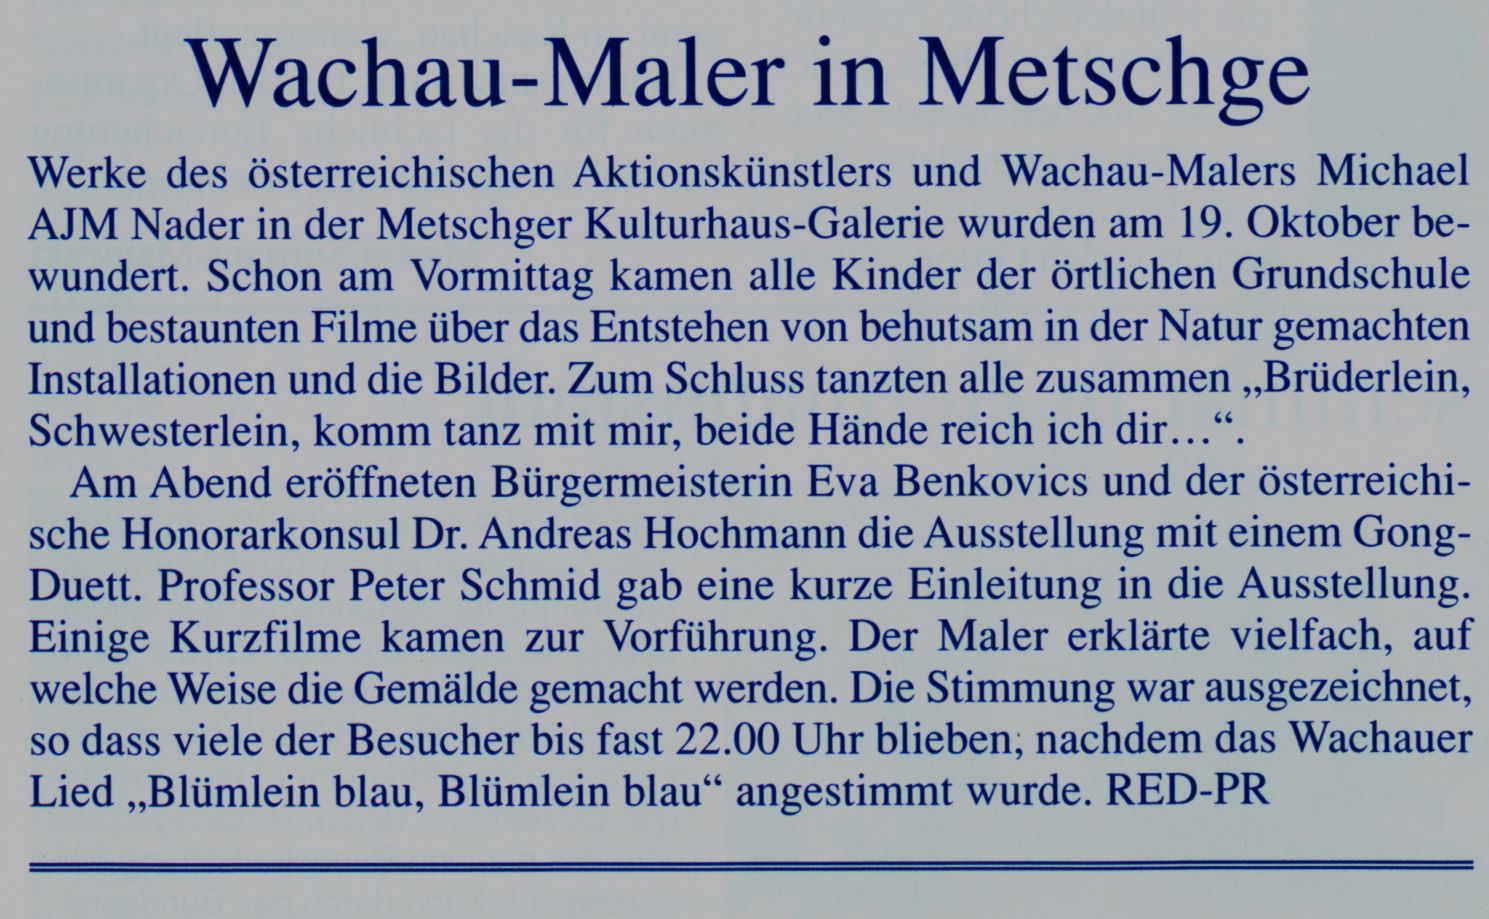 Wachau-Maler in Metschge